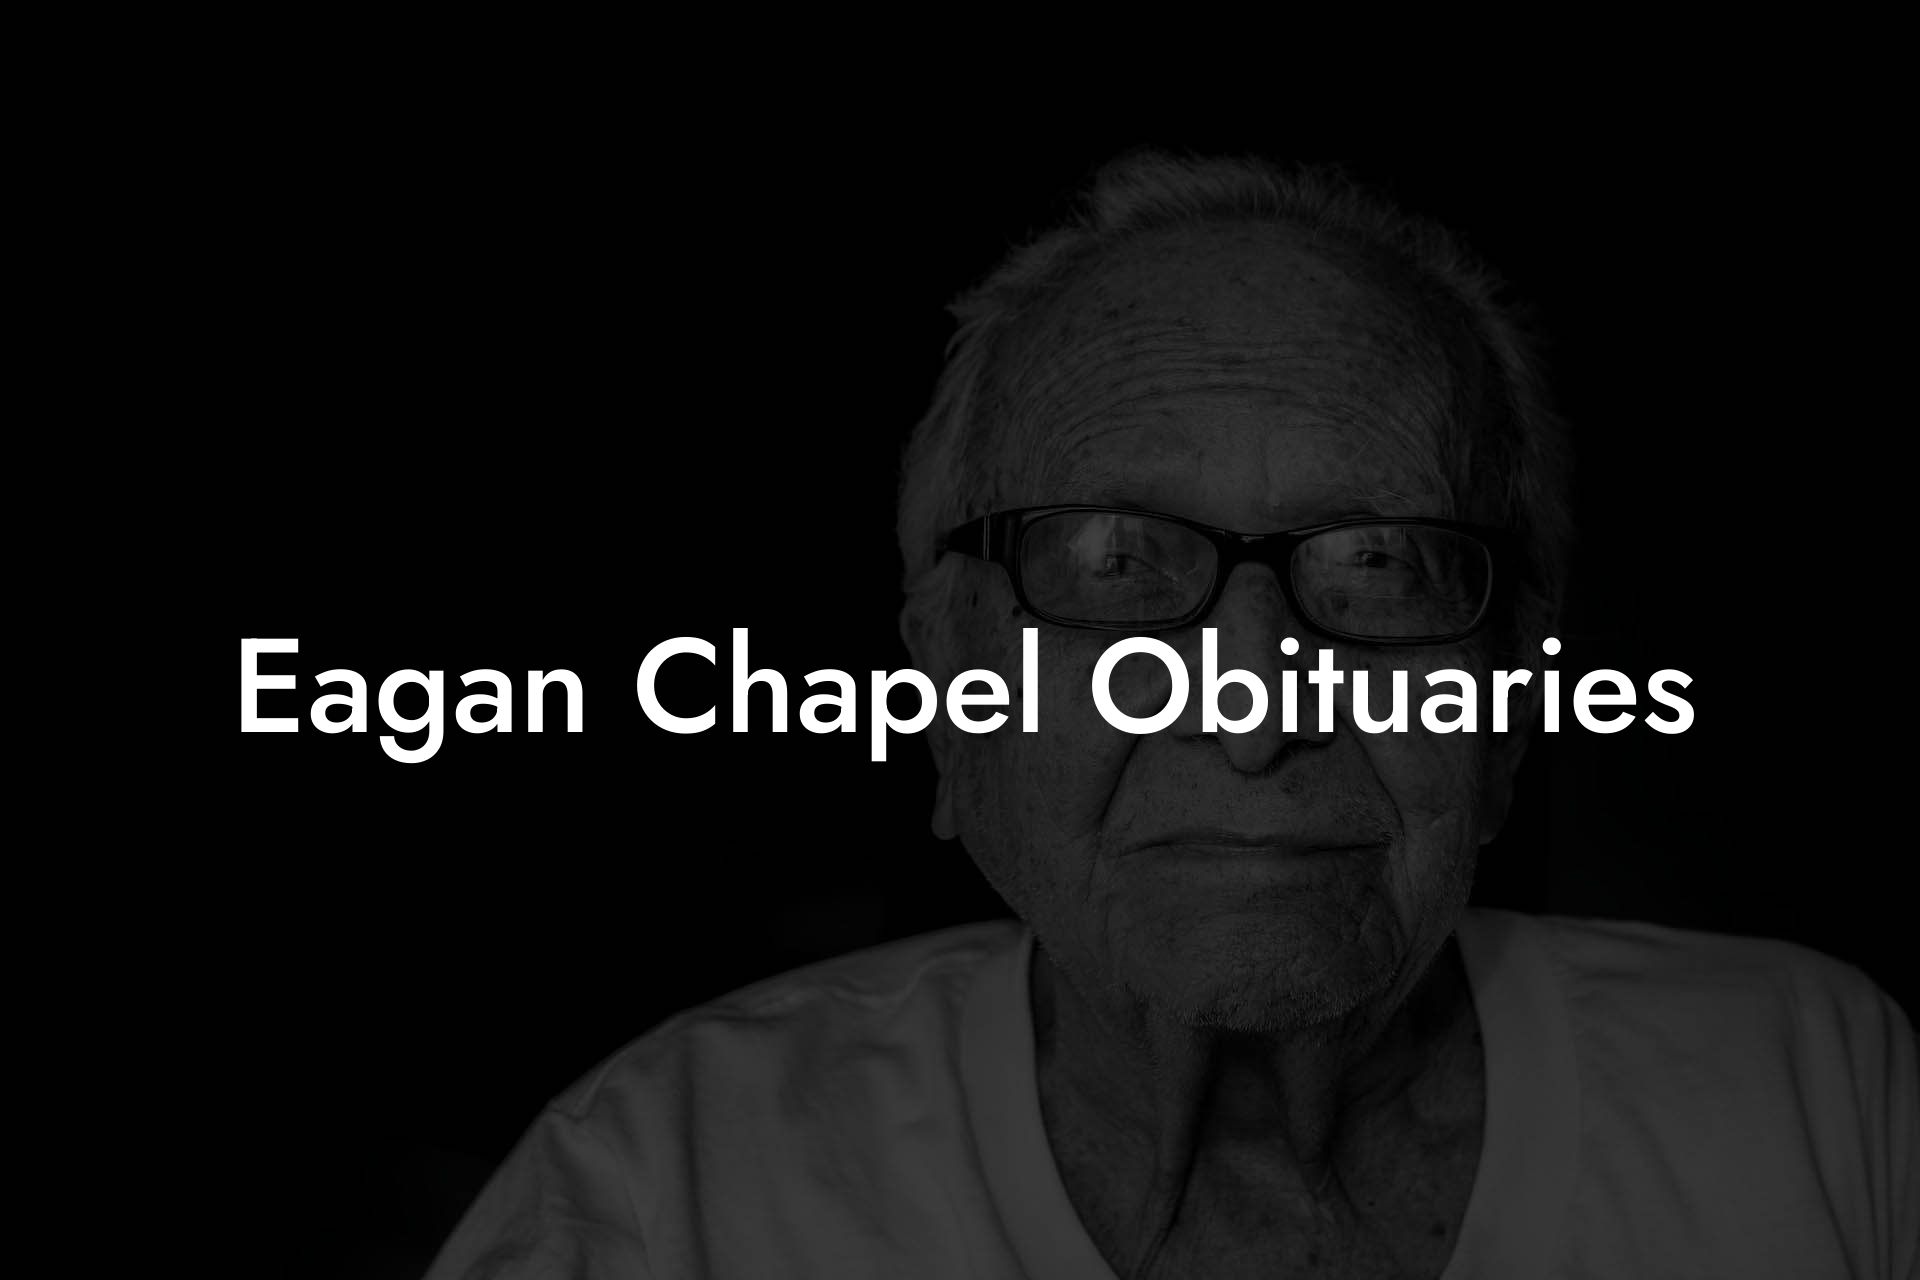 Eagan Chapel Obituaries